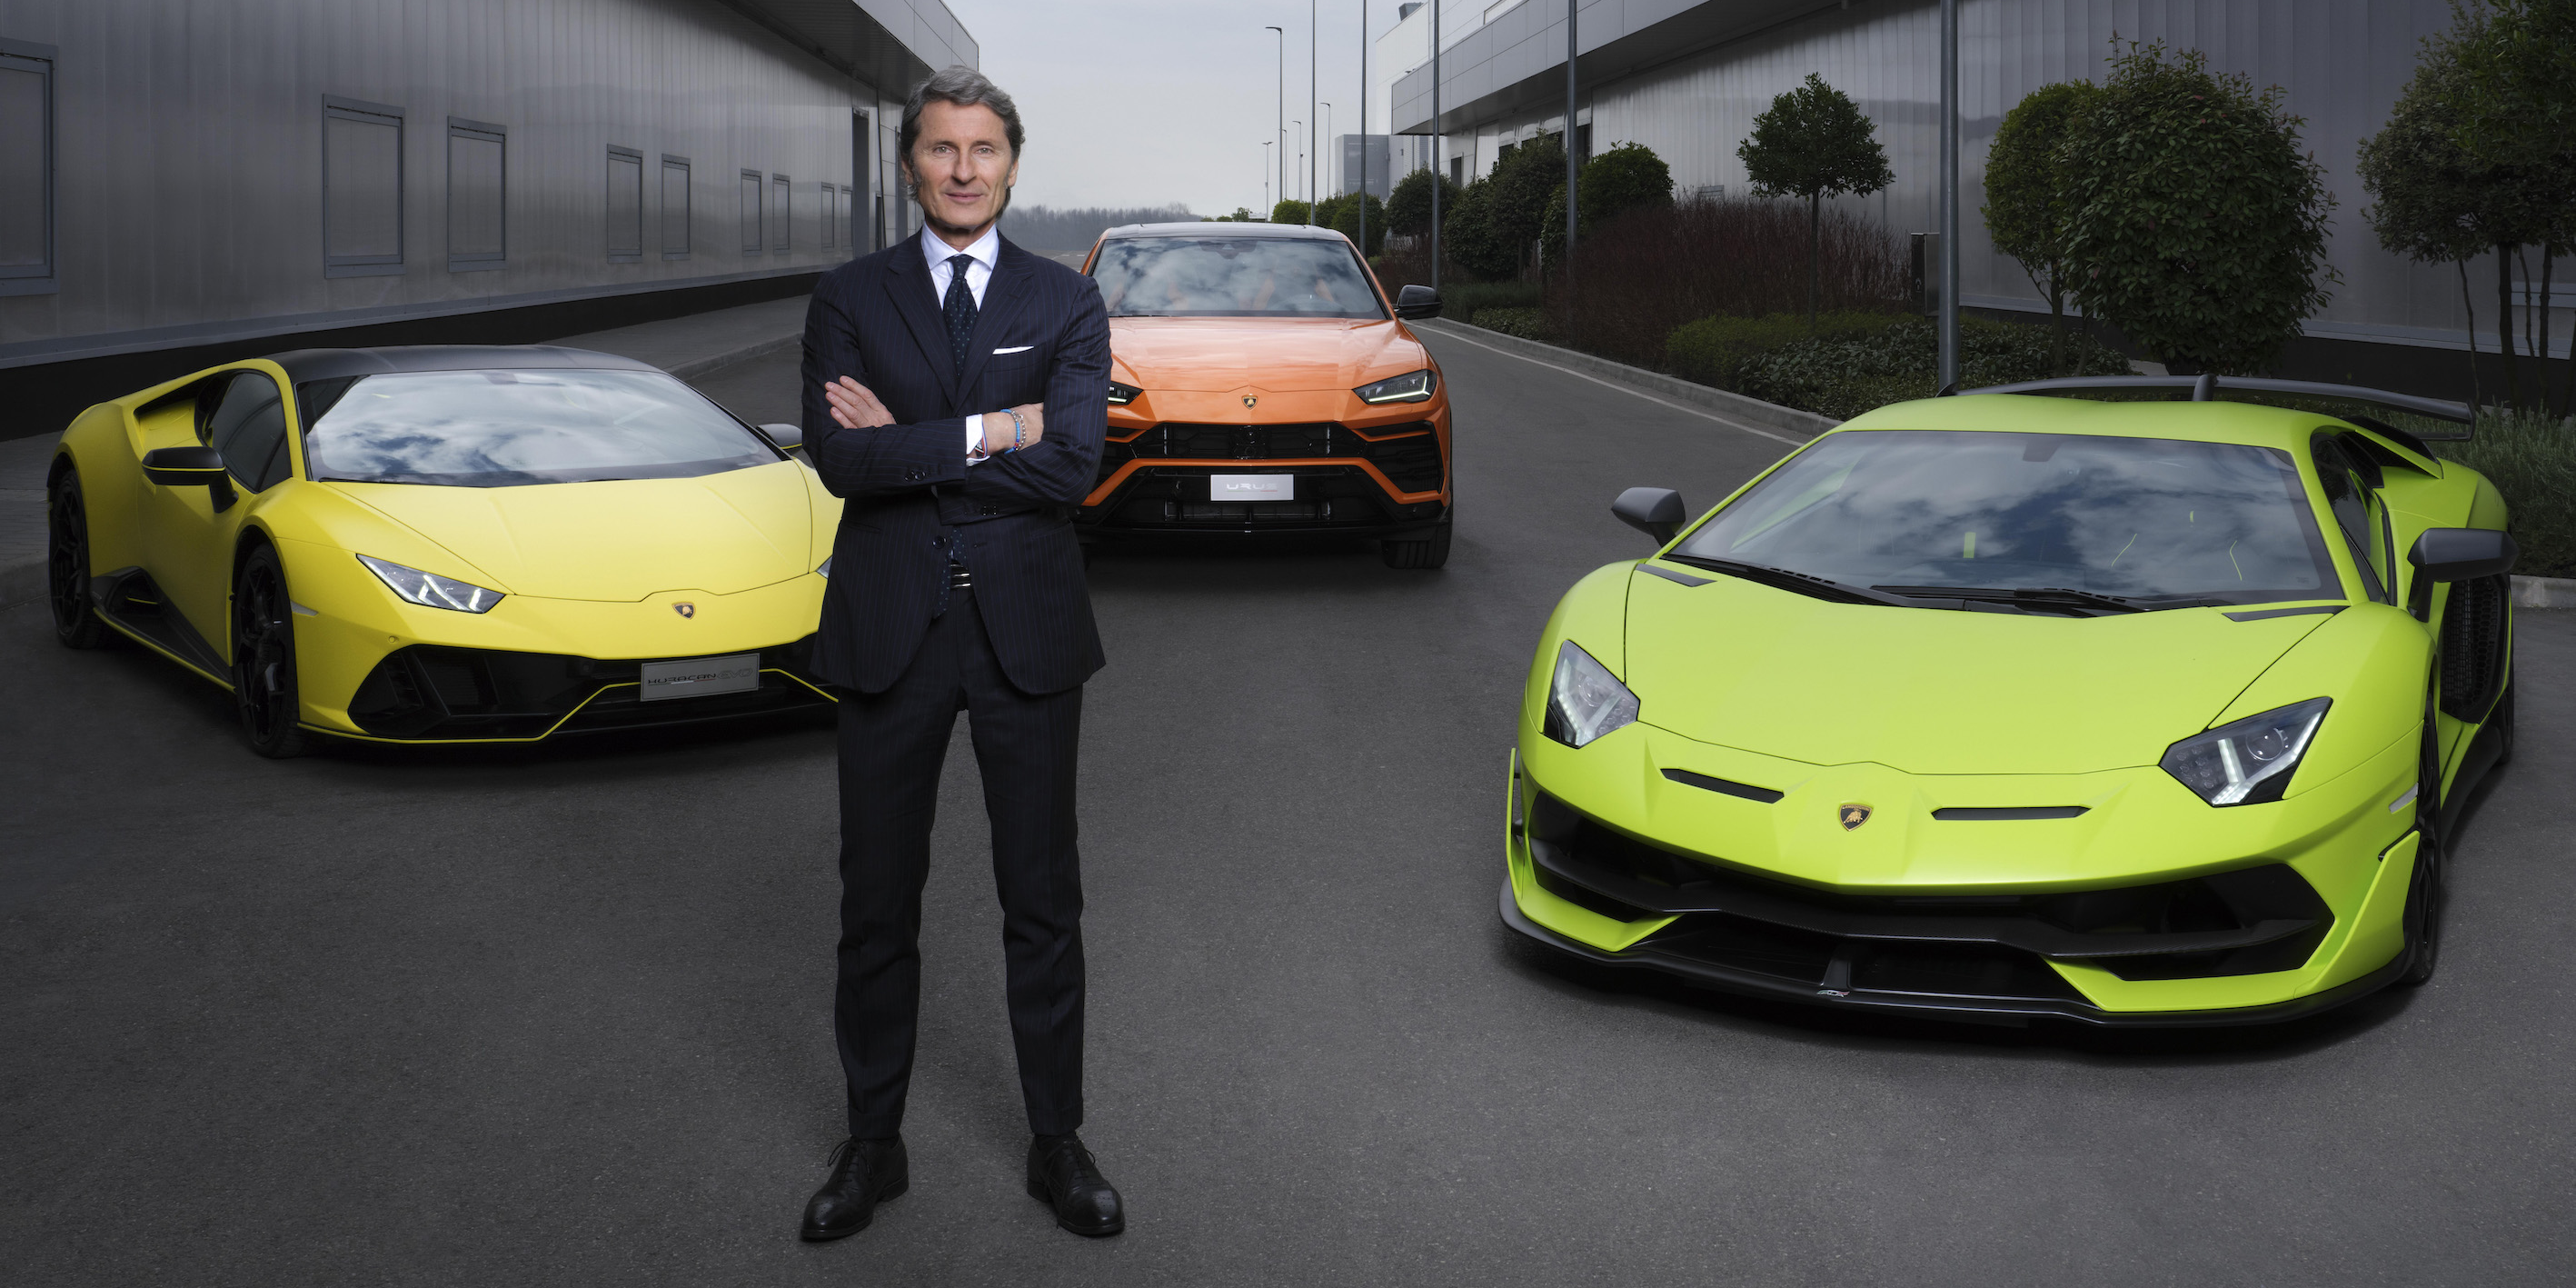 Lamborghini cultive sa rentabilité insolente et reste fidèle aux